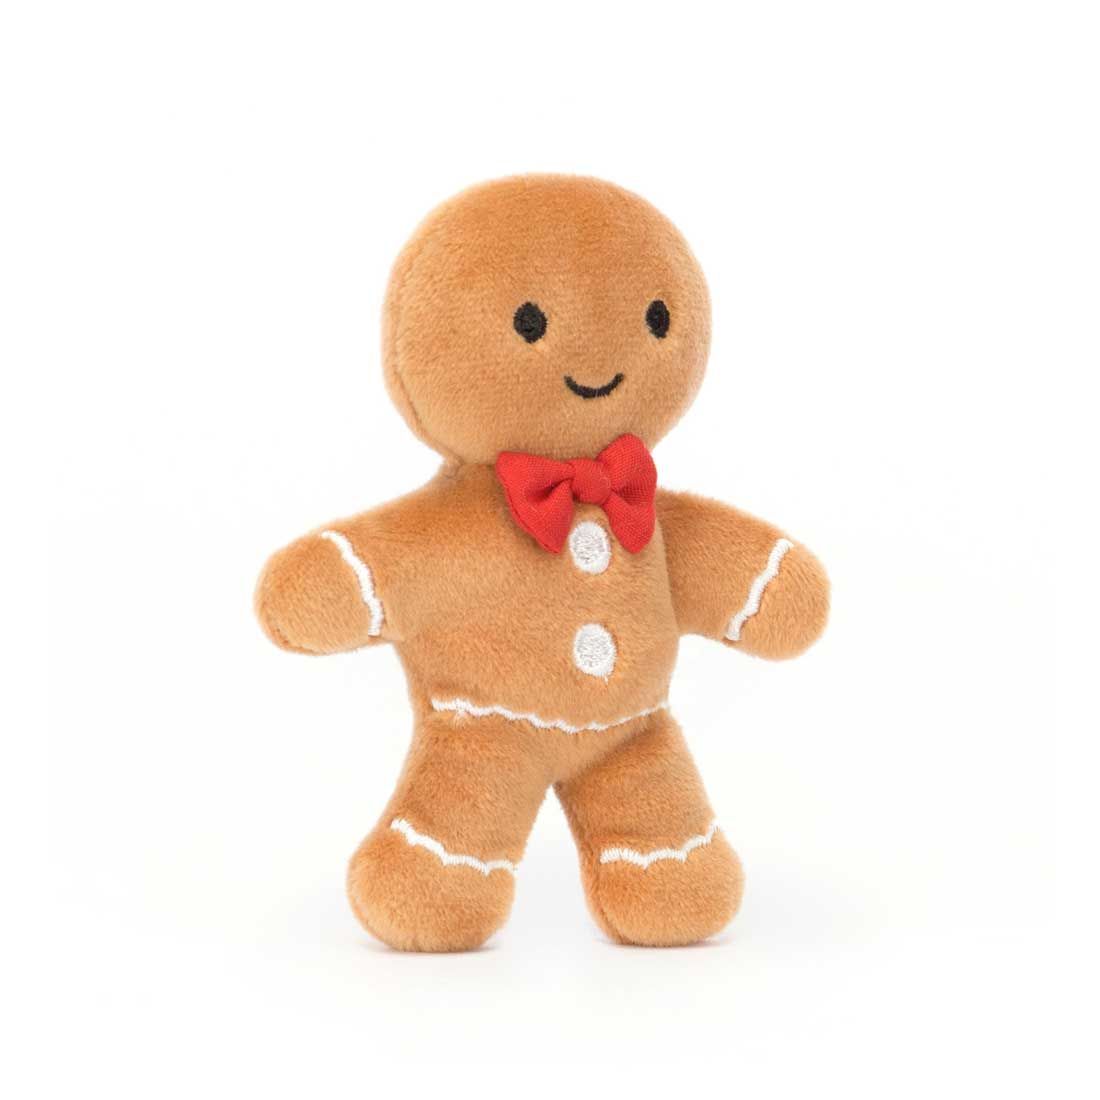 Mini Jellycat peberkage bamse med broderet detaljer og en lille rød sløjfe om halsen